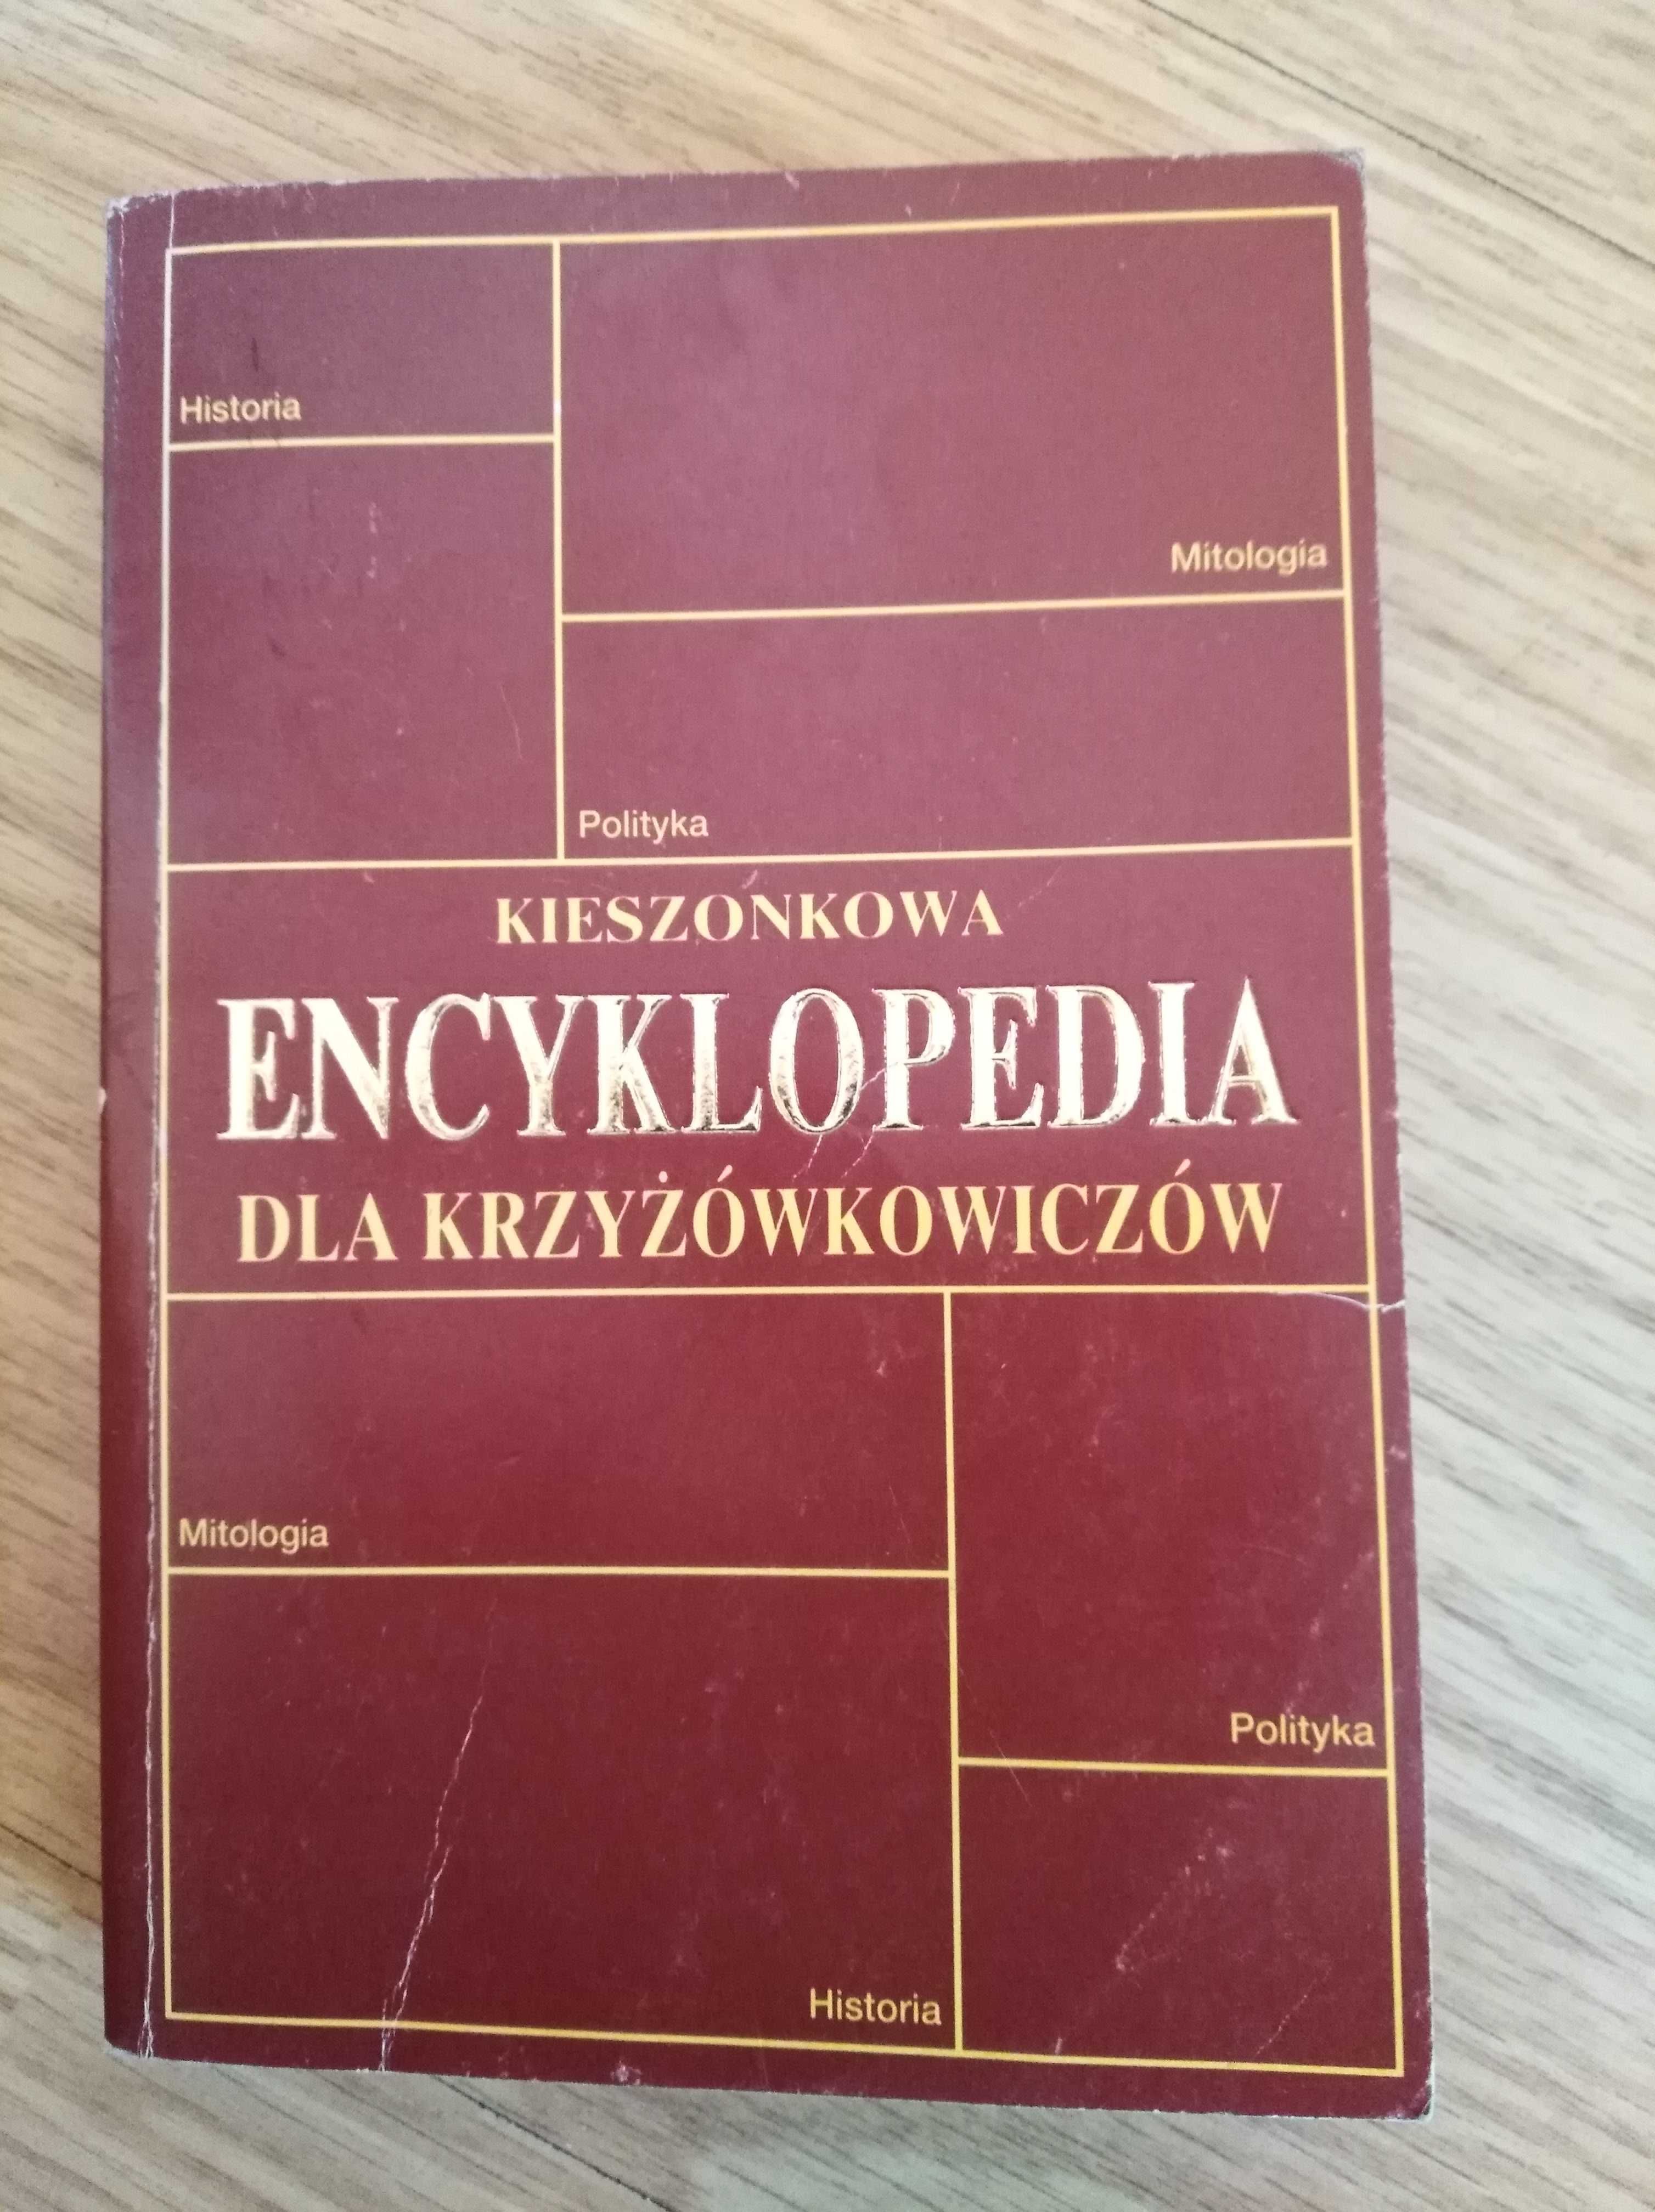 Encyklopedie dla krzyzowkowiczow, dwie za 8 zl